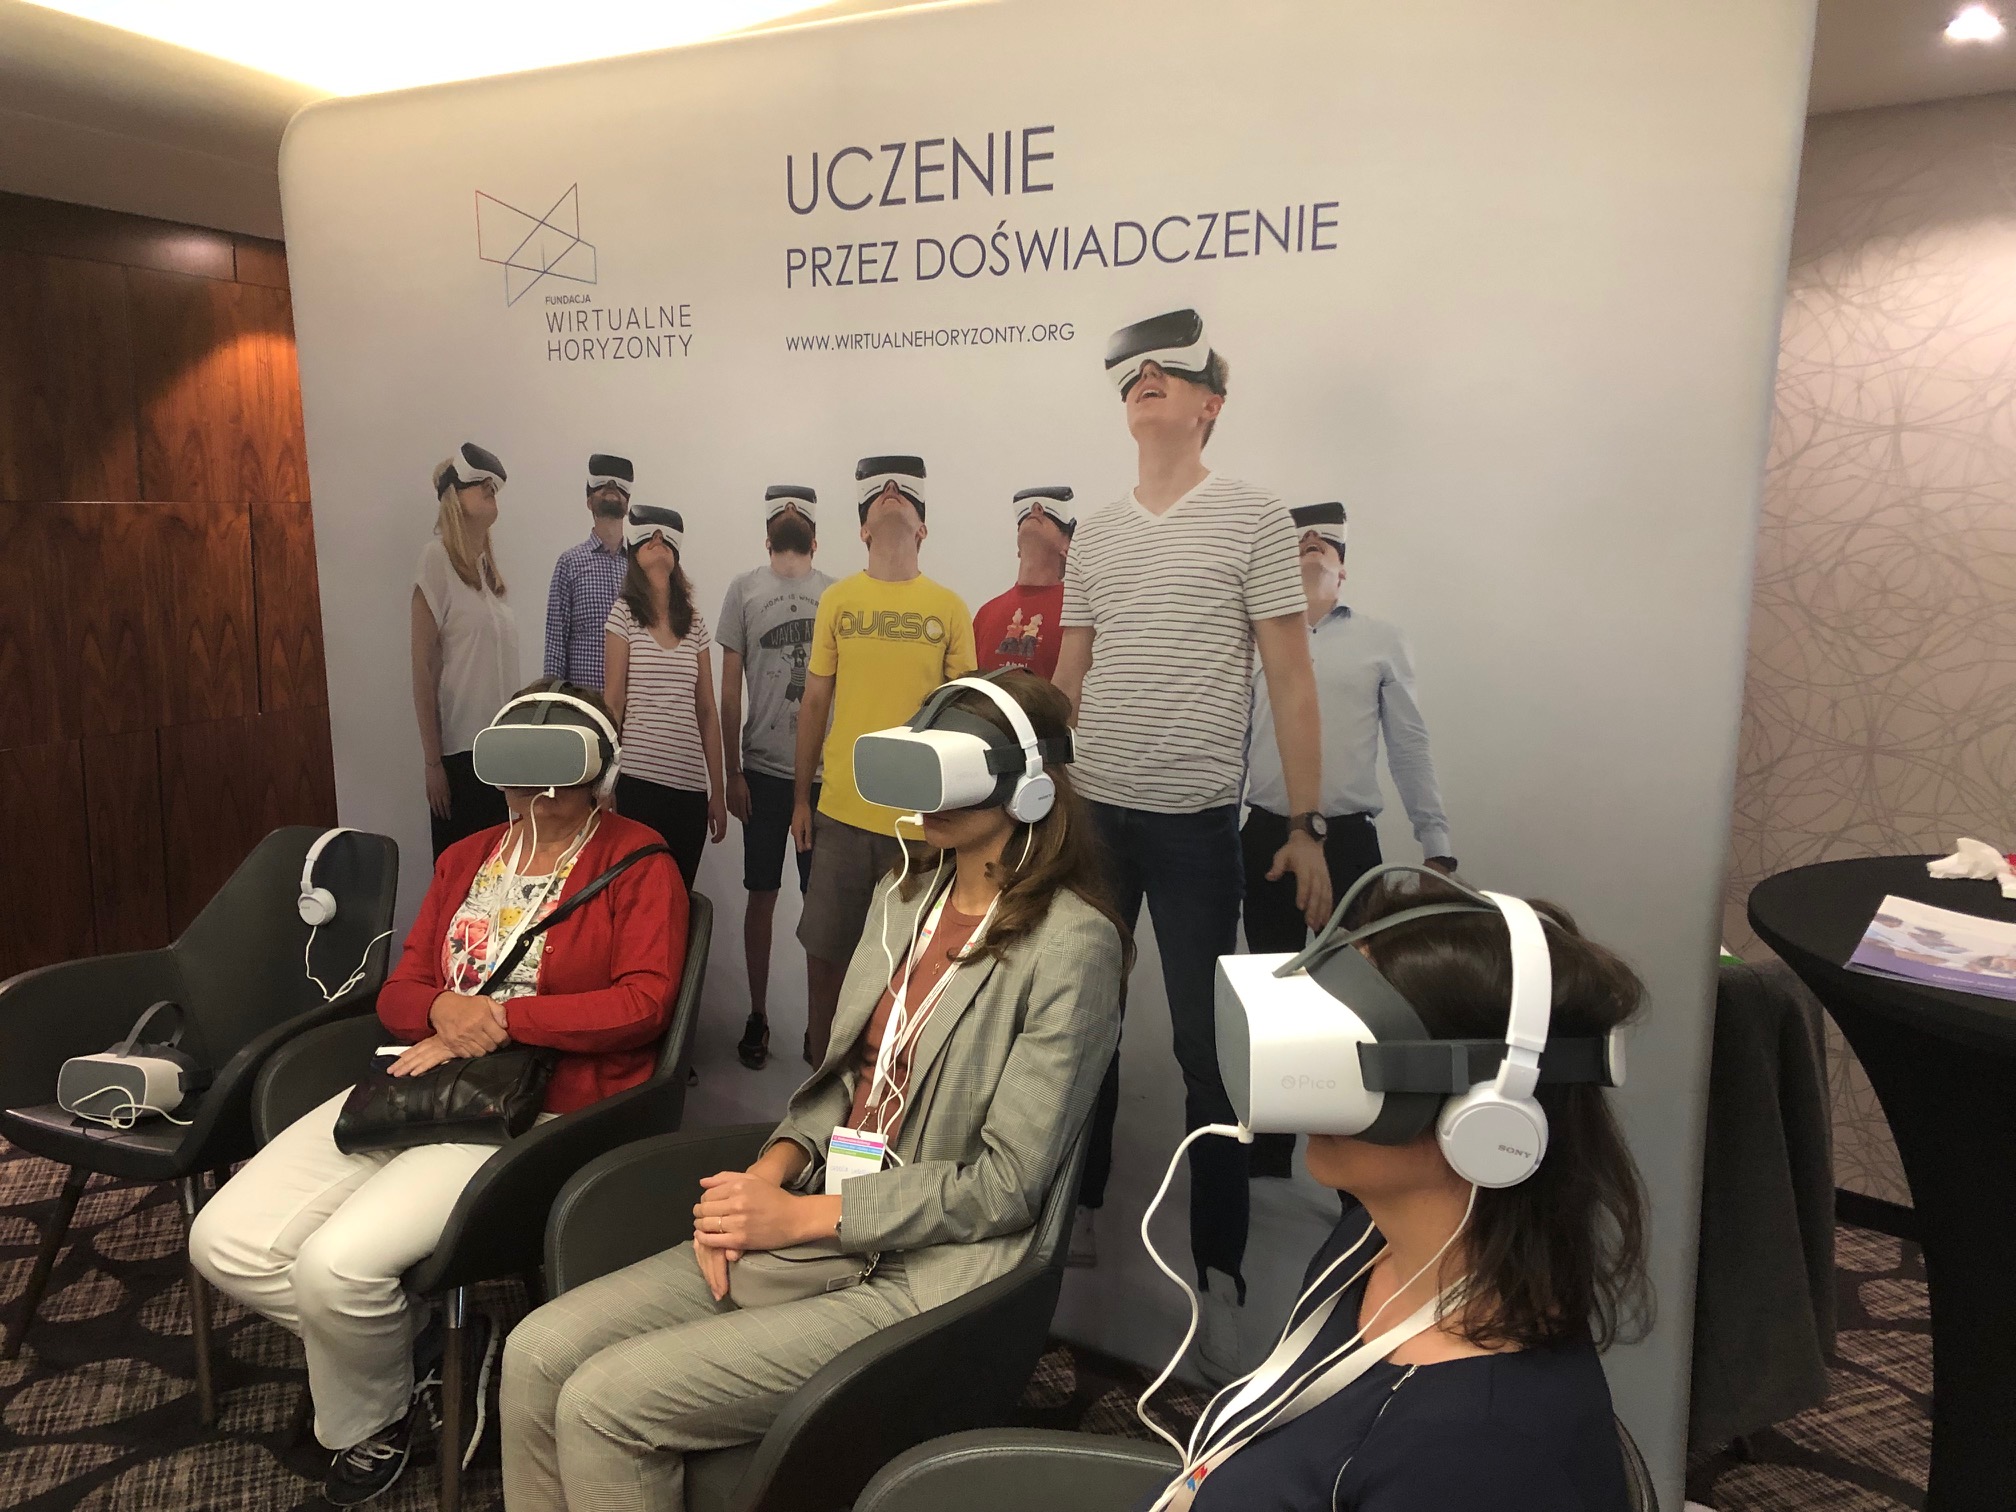 Trzy osoby z okularami VR i słuchawkami na uszach. W tle plakat: uczenie przez doświadczenie.